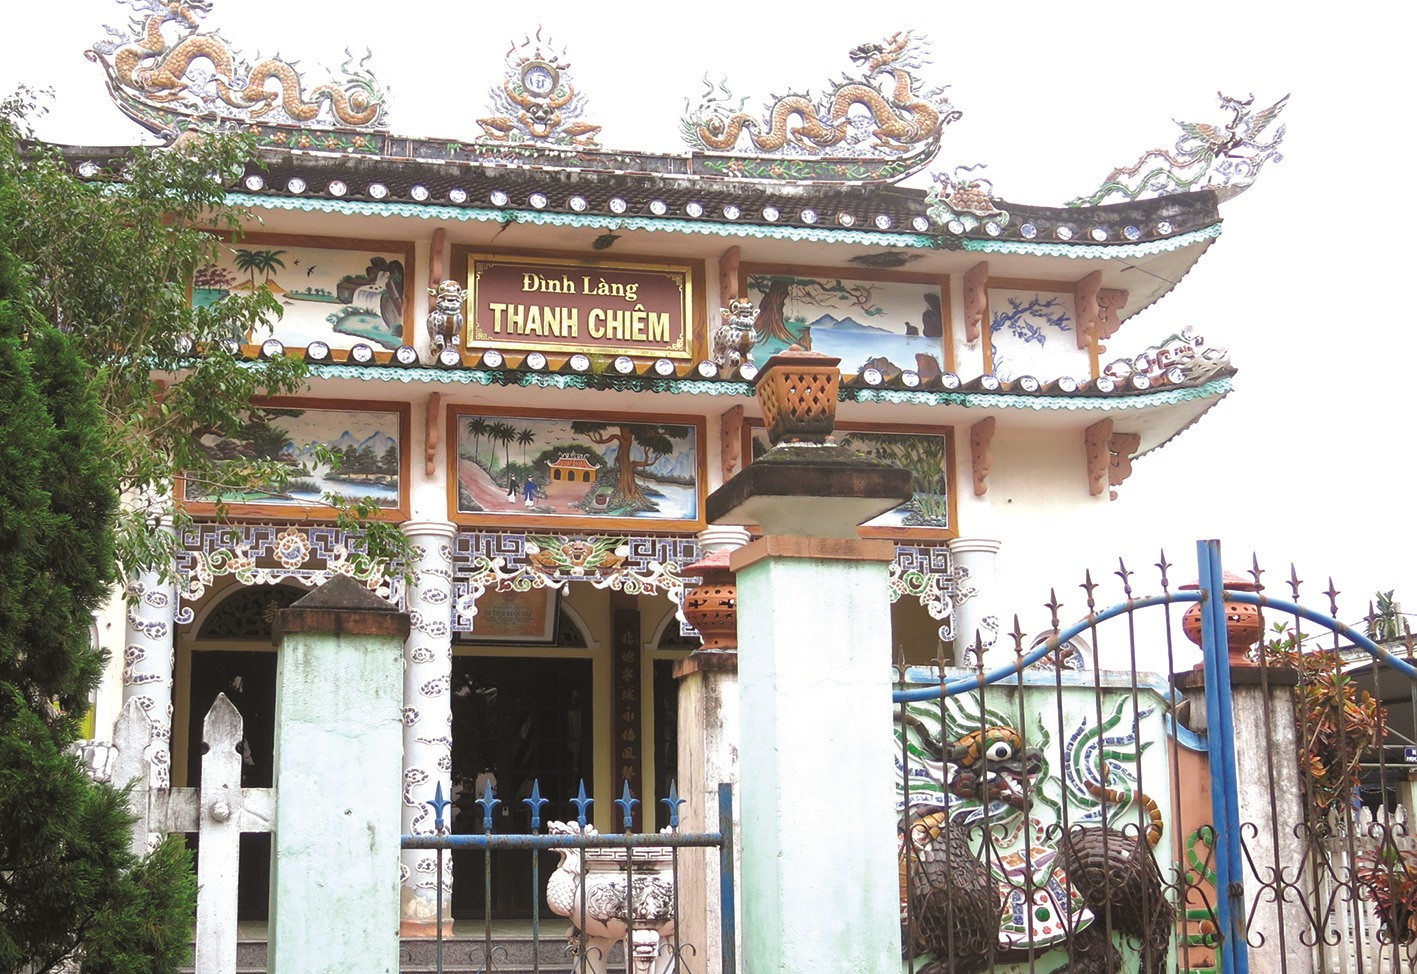 Đình làng Thanh Chiêm được cho là đã xây dựng trên nền hành cung của dinh trấn Thanh Chiêm.